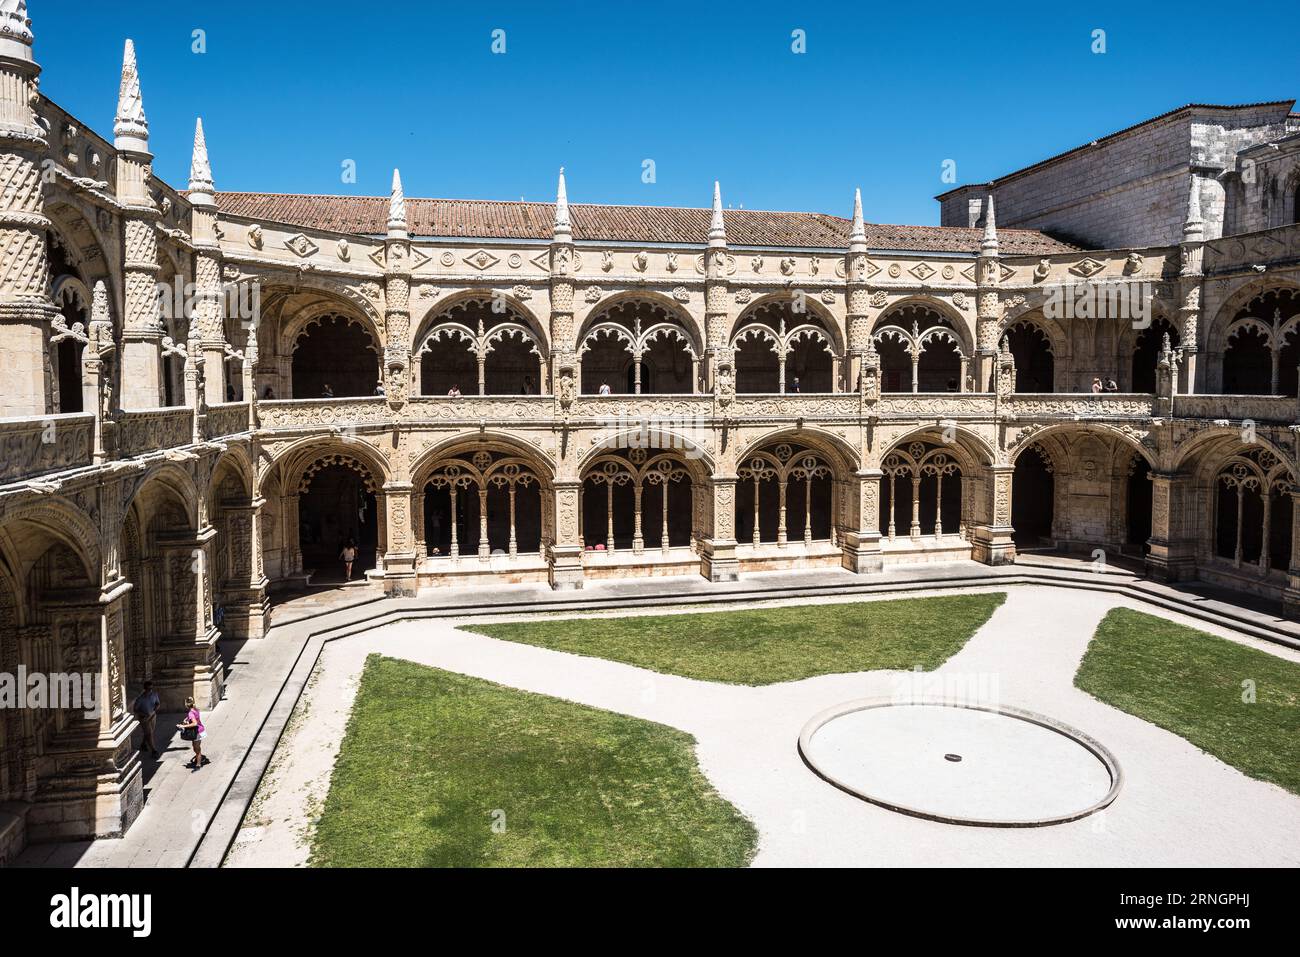 BELEM, Lissabon, Portugal – Mosteiro dos Jeronimos, ein herausragendes architektonisches Wunder in Belem, steht als ikonische Darstellung des manuelinischen Stils. Dieses UNESCO-Weltkulturerbe mit seinen kunstvollen Details und seiner historischen Bedeutung unterstreicht Portugals Erbe der Erkundung. Stockfoto